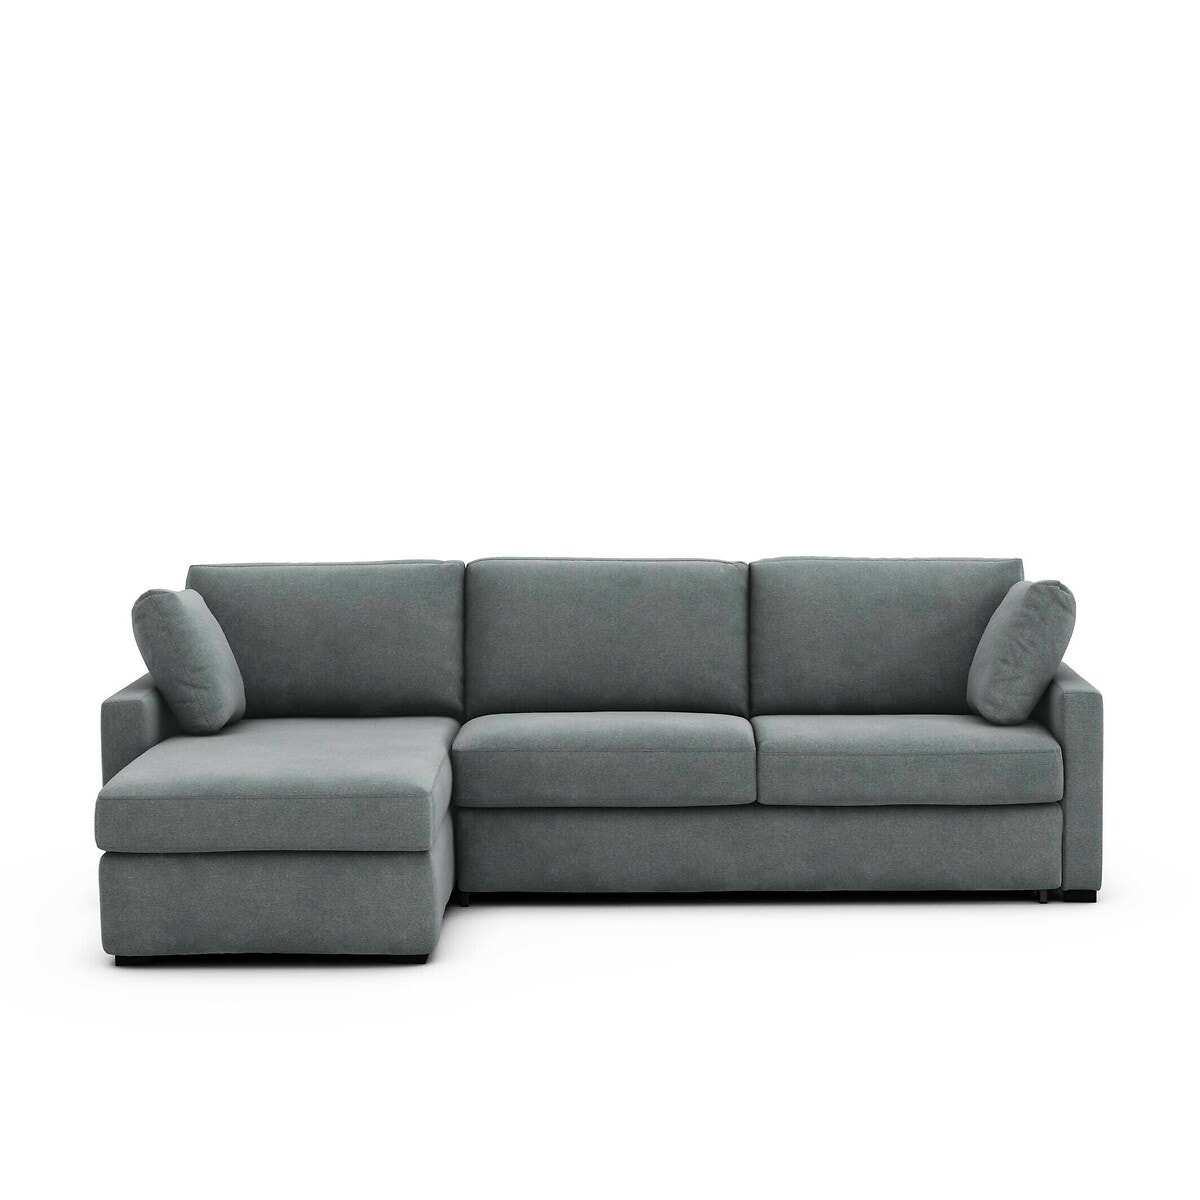 Σπίτι > Έπιπλα > Καθιστικό > Καναπέδες > Γωνιακοί καναπέδες Γωνιακός καναπές-κρεβάτι με ανάγλυφη ταπετσαρία και στρώμα τεχνολογίας Bultex Μ160xΠ265xΥ85cm